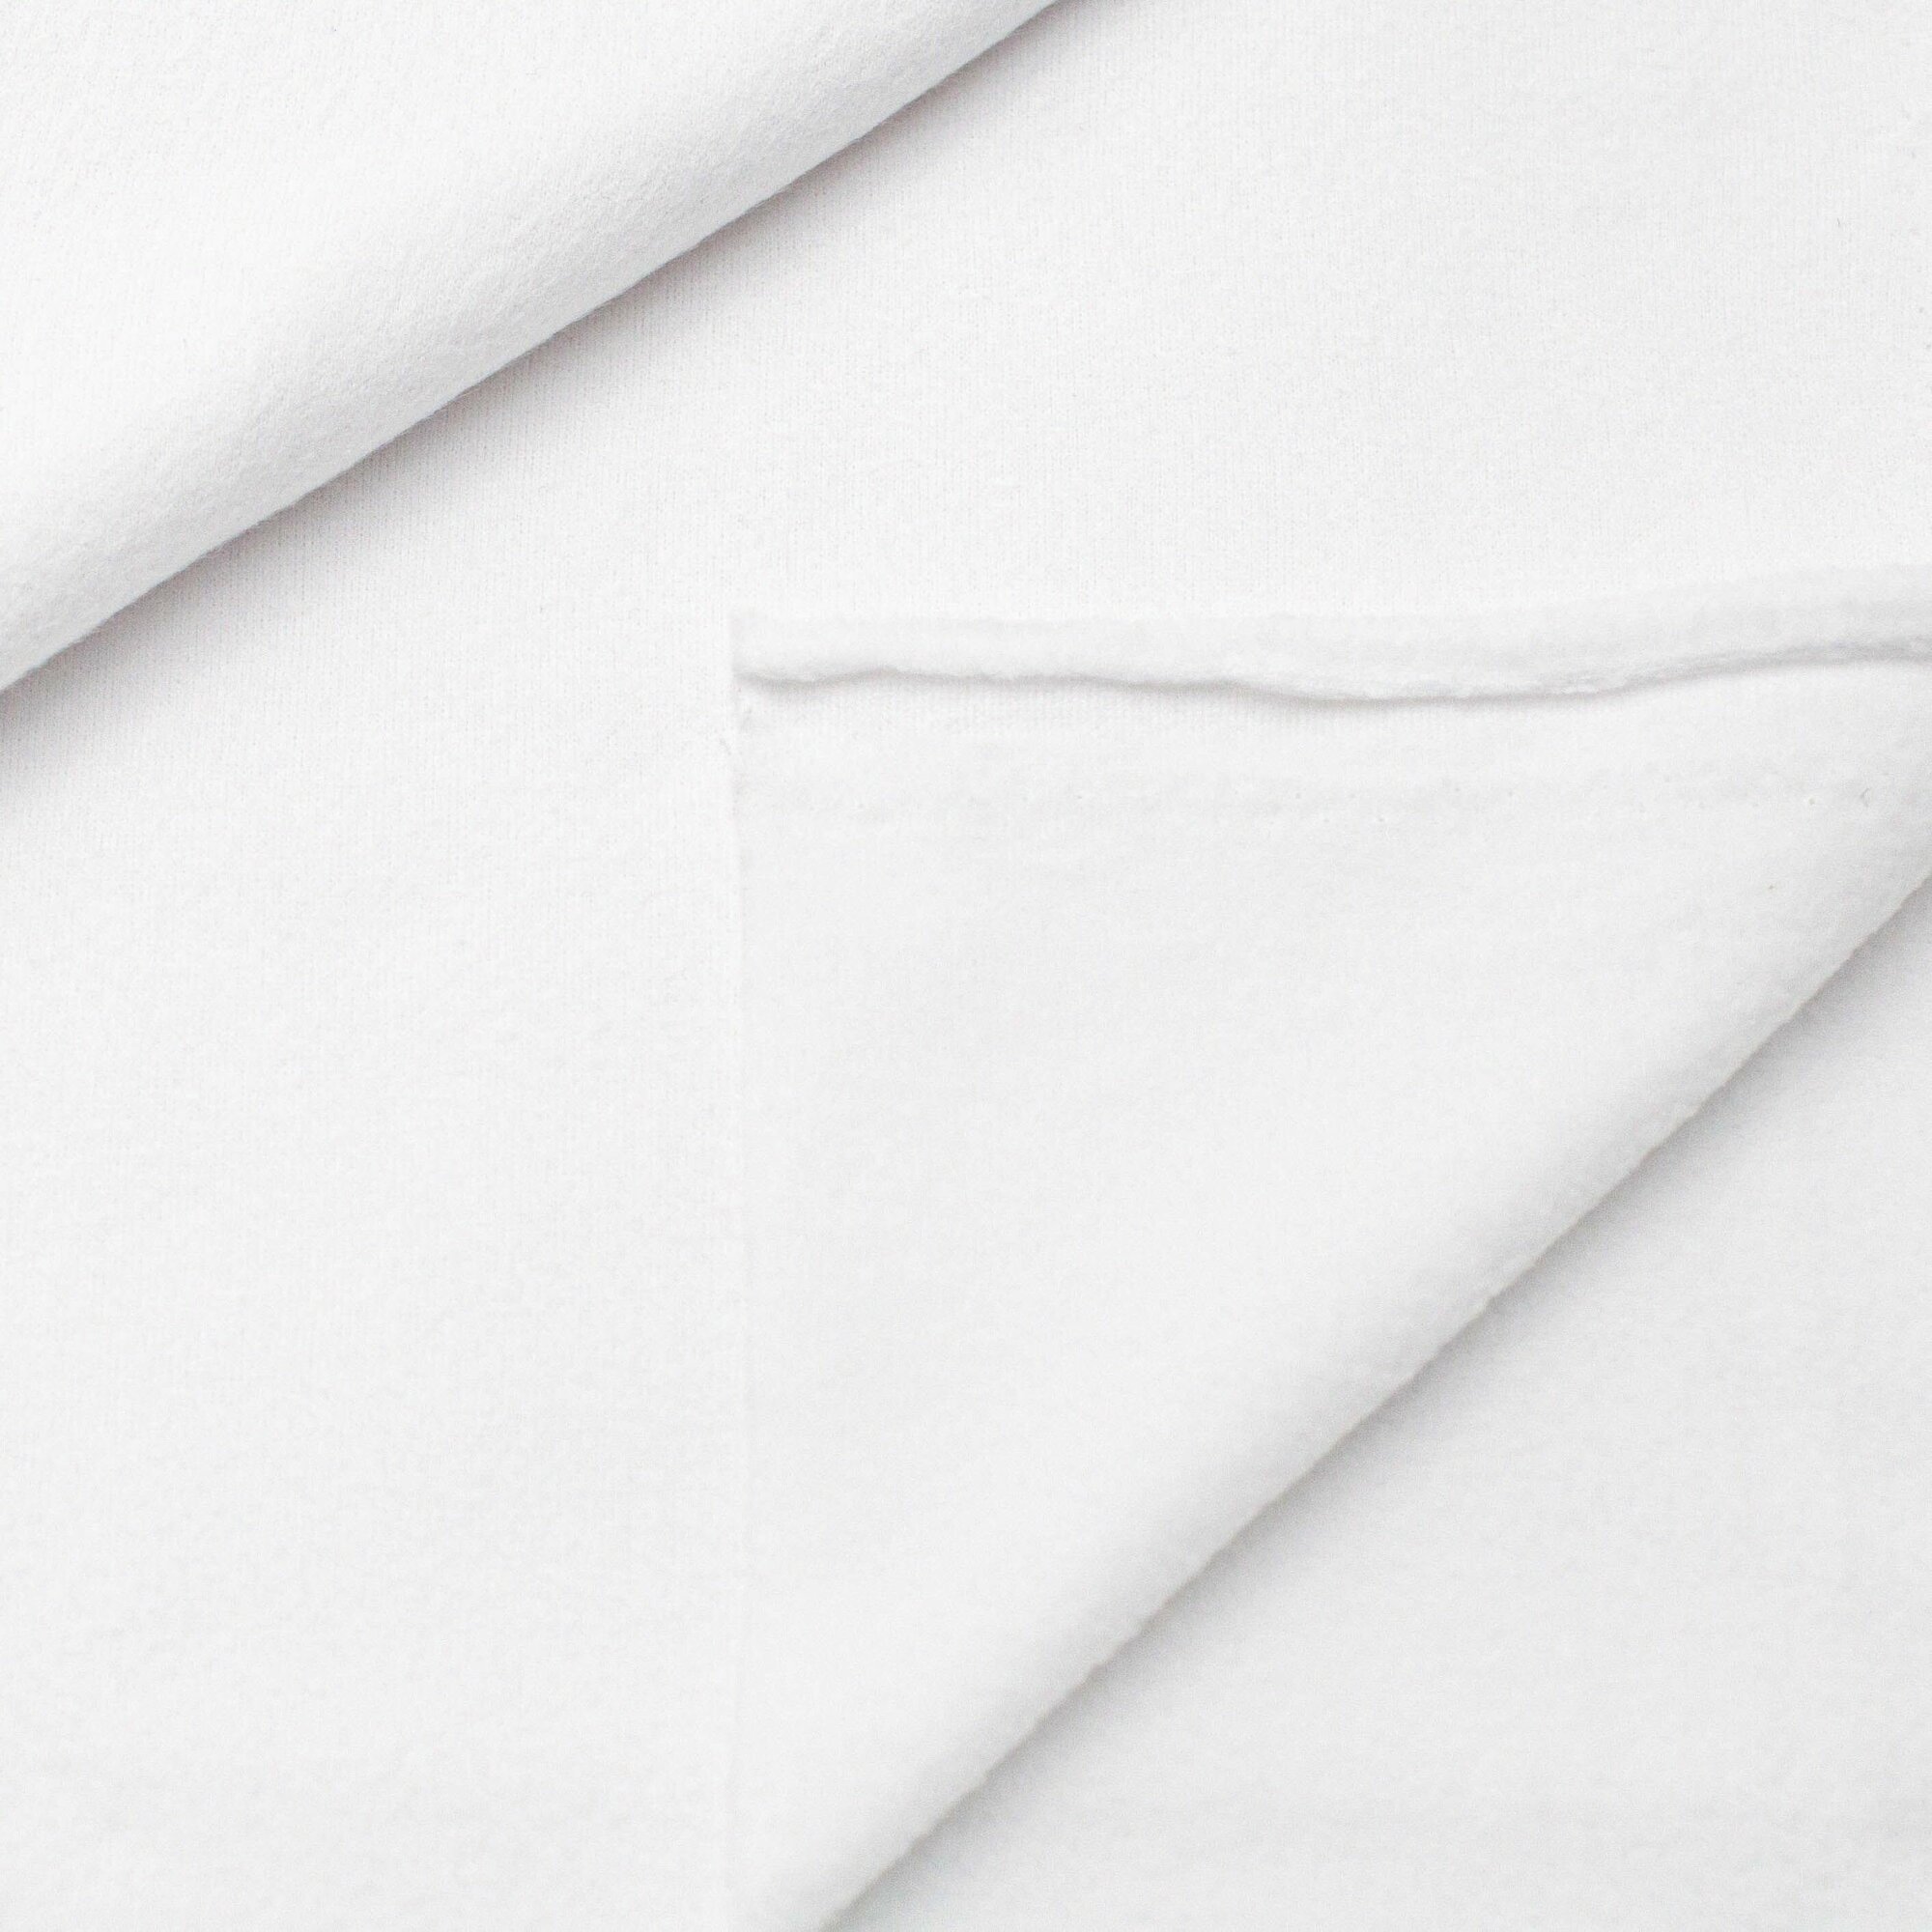 Флис односторонний, цвет белый для рукоделия, шитья (50Х50 см), антипиллинг, плотность 180 гр/м2